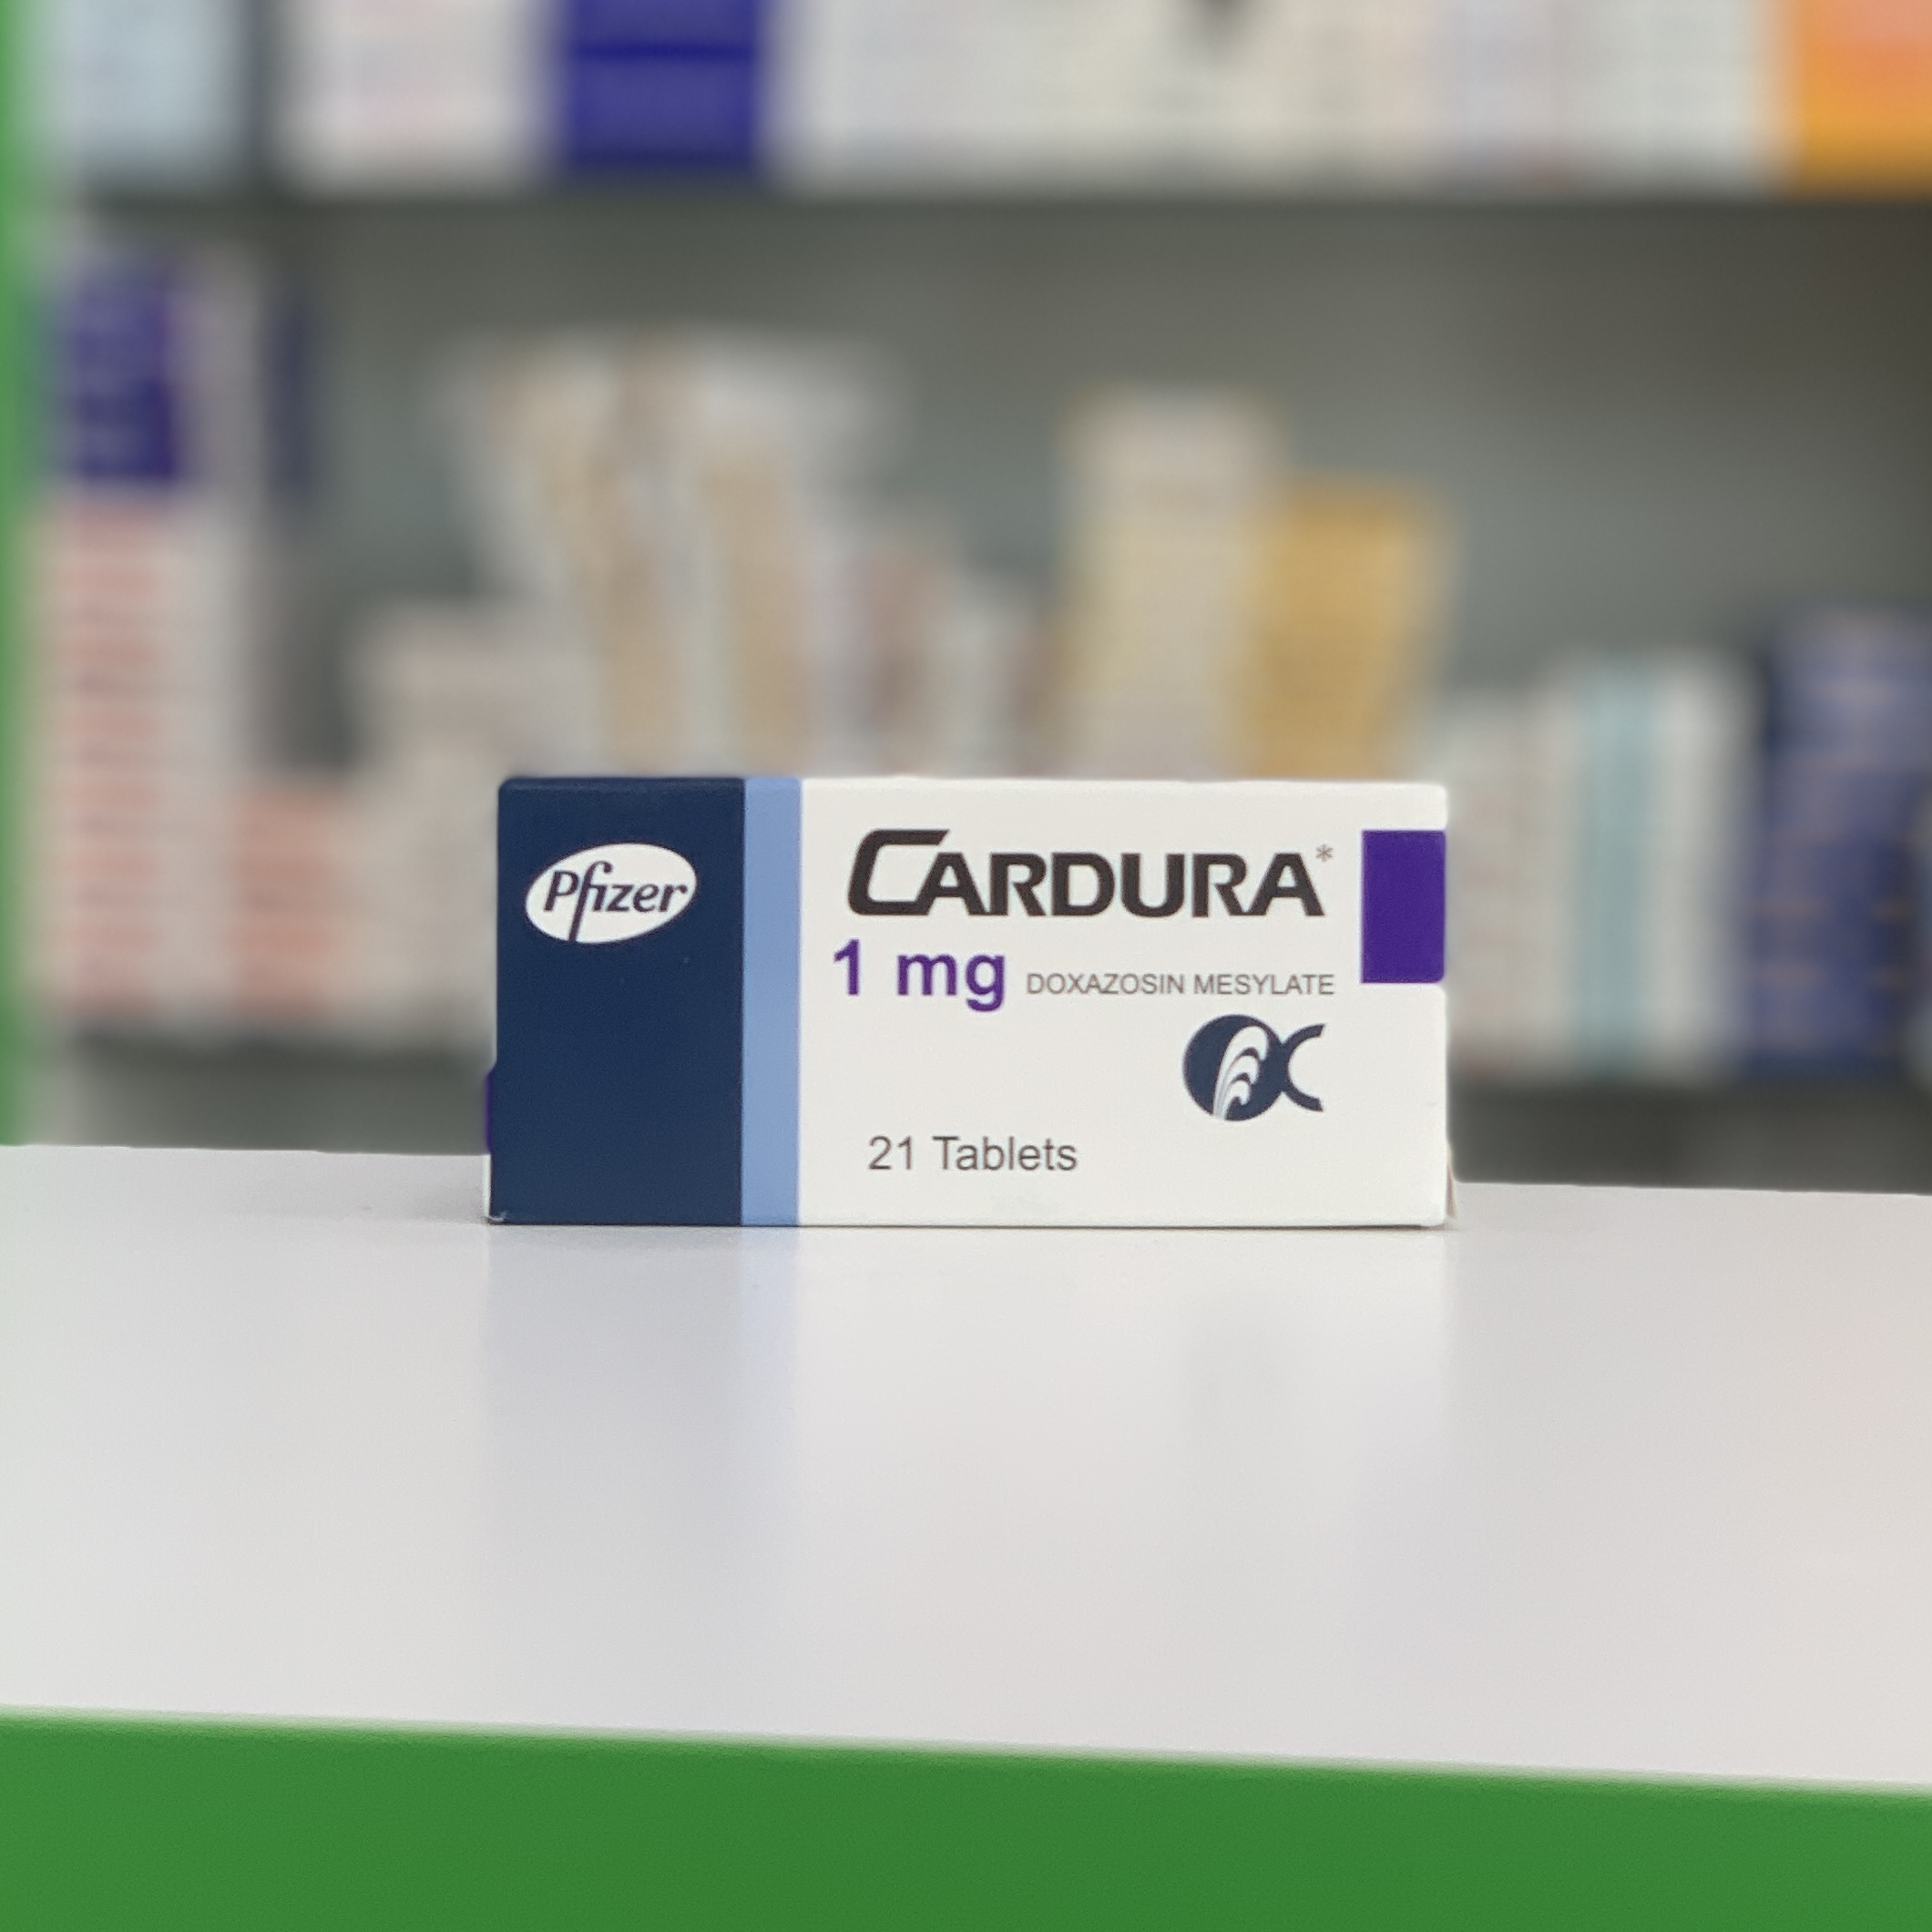 Кардура 1 мг 21 таблетка - Русская аптека в Египте